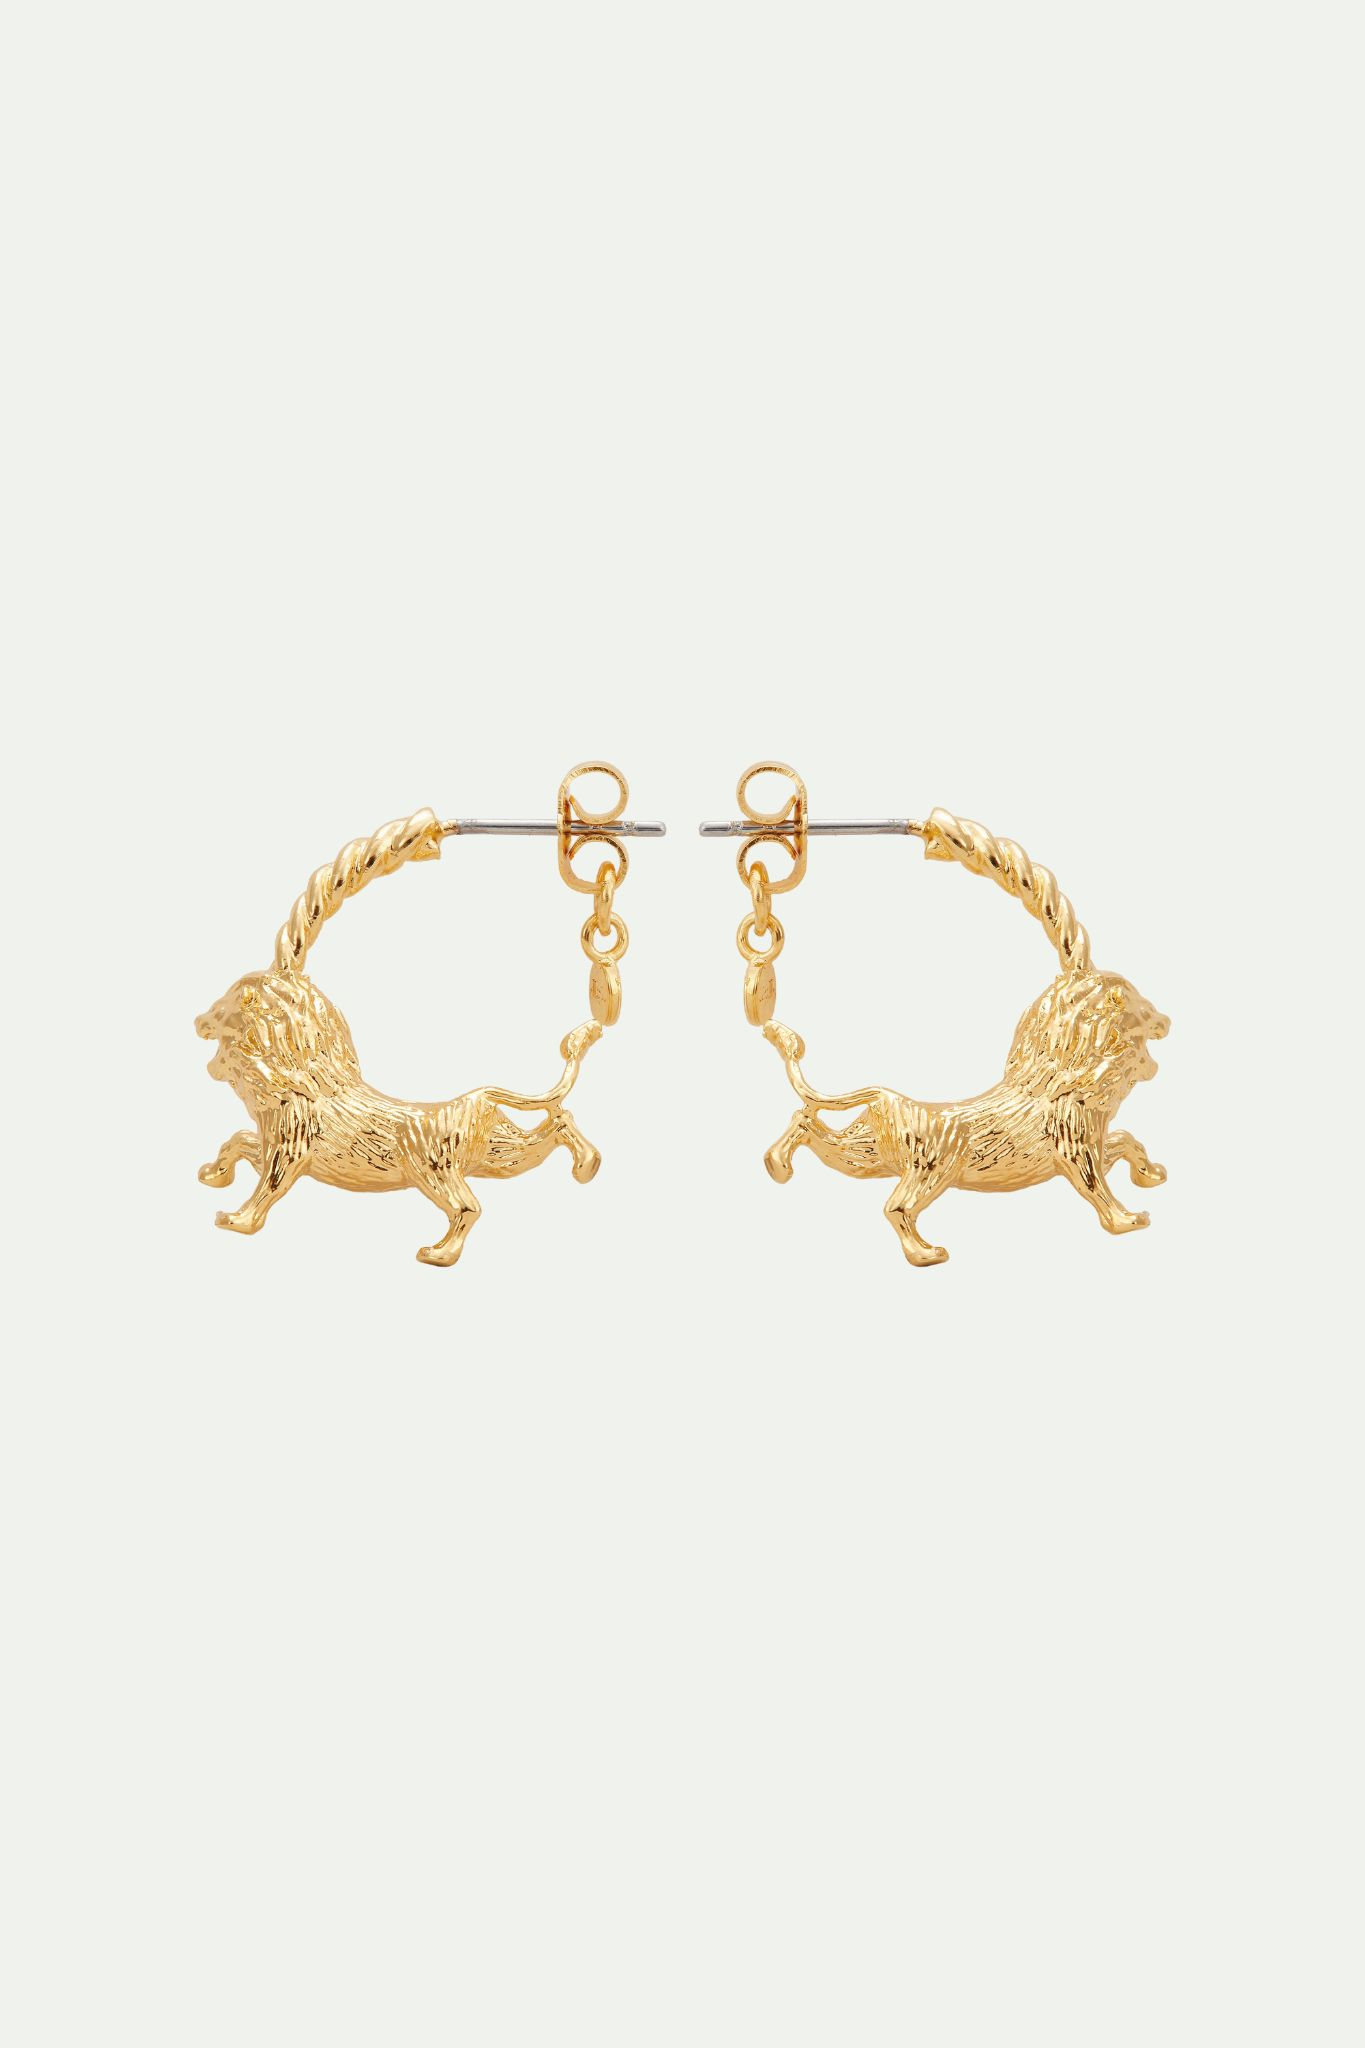 Leo zodiac sign hoops earrings